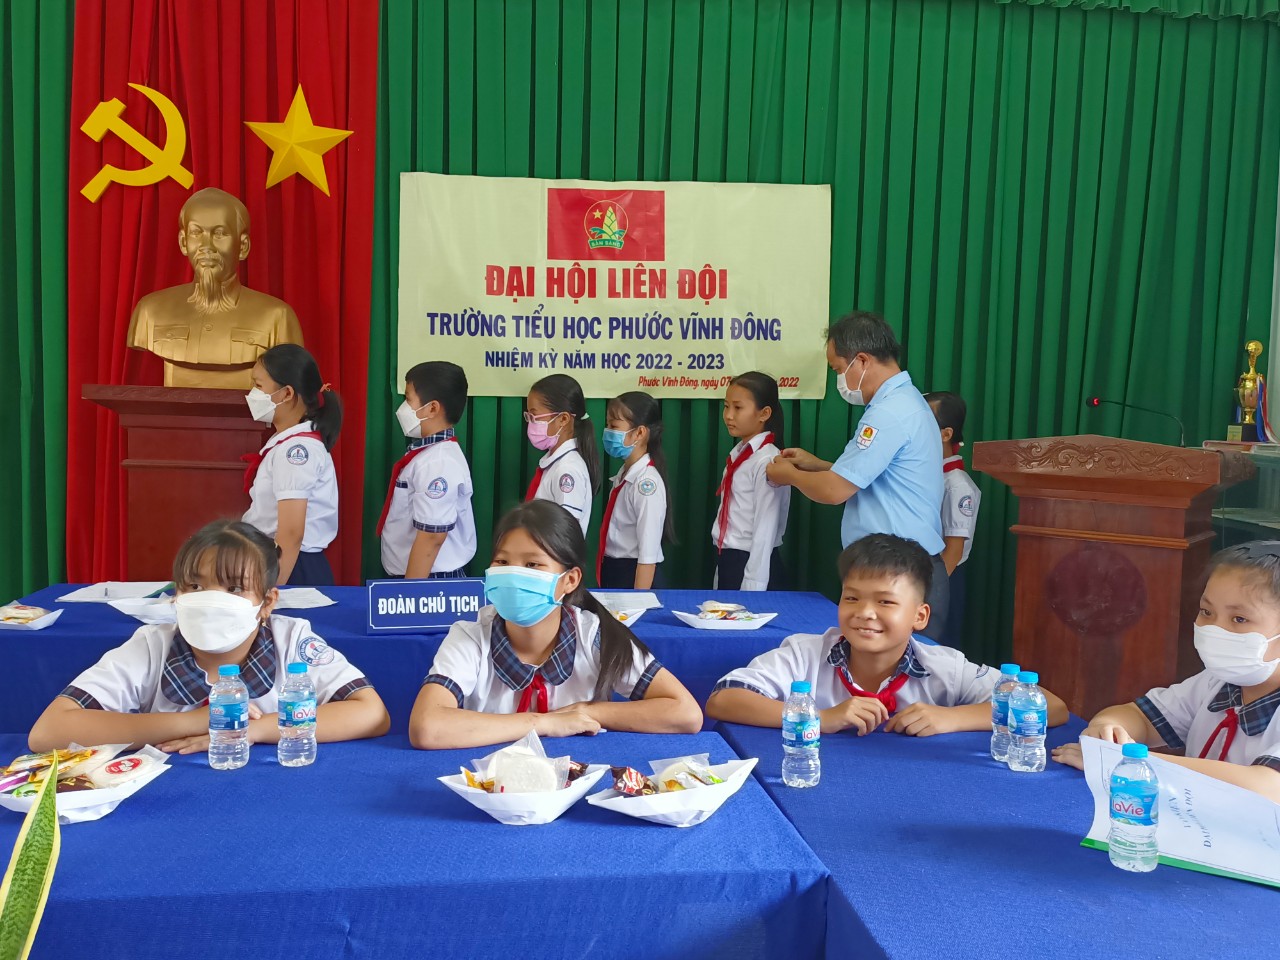 Đ/c Nguyễn Thanh Nghị TPT đội Công nhận BCH Liên đội mới và đeo cấp hiệu